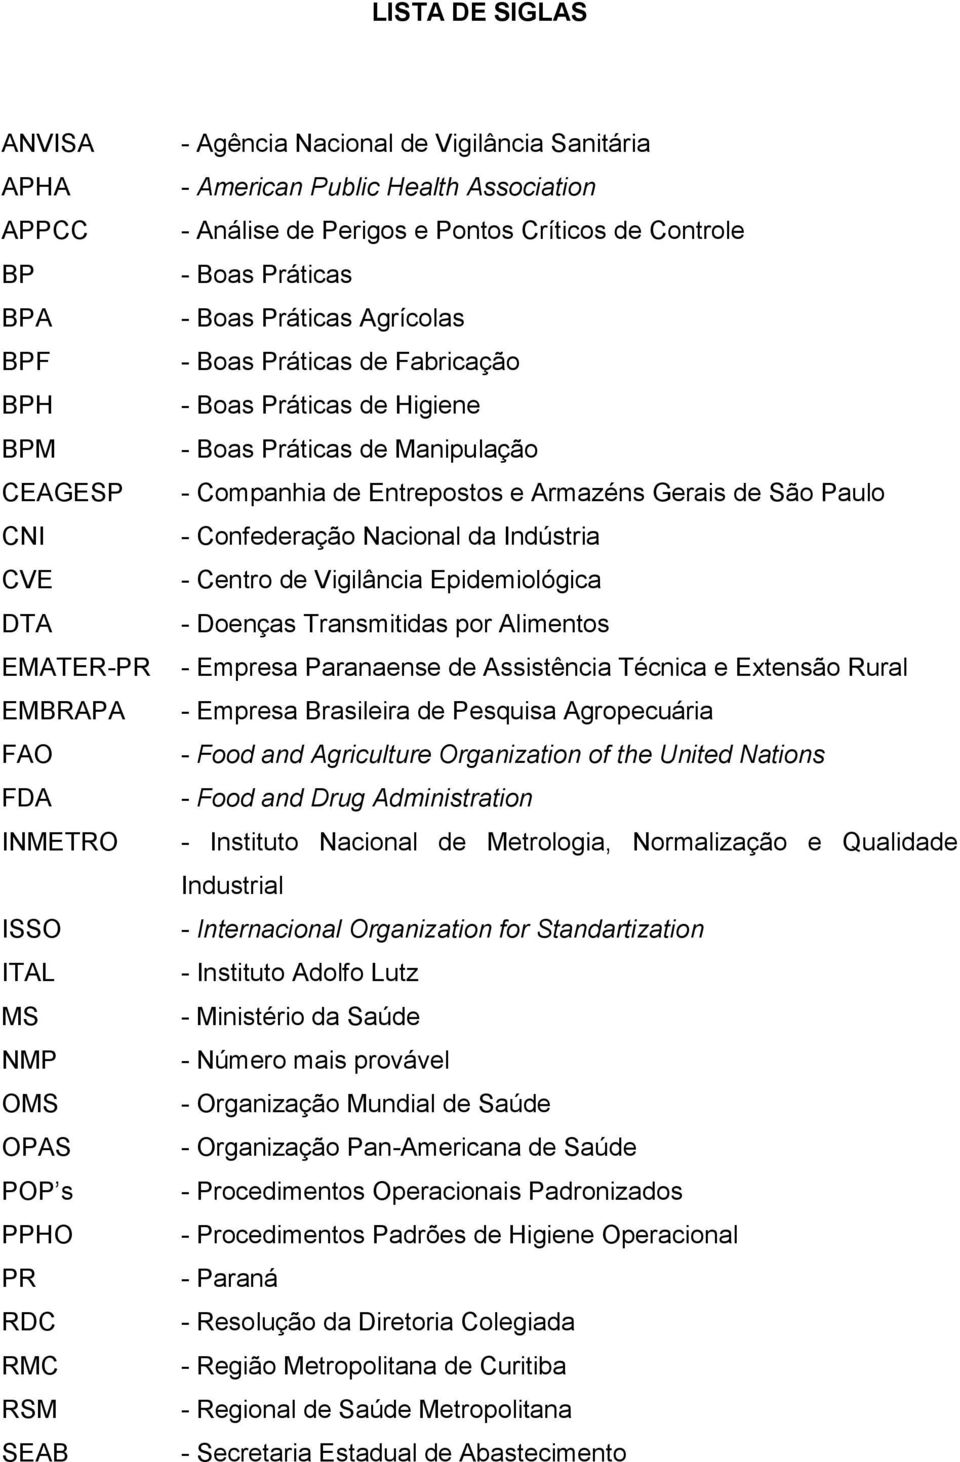 Boas Práticas de Manipulação - Companhia de Entrepostos e Armazéns Gerais de São Paulo - Confederação Nacional da Indústria - Centro de Vigilância Epidemiológica - Doenças Transmitidas por Alimentos